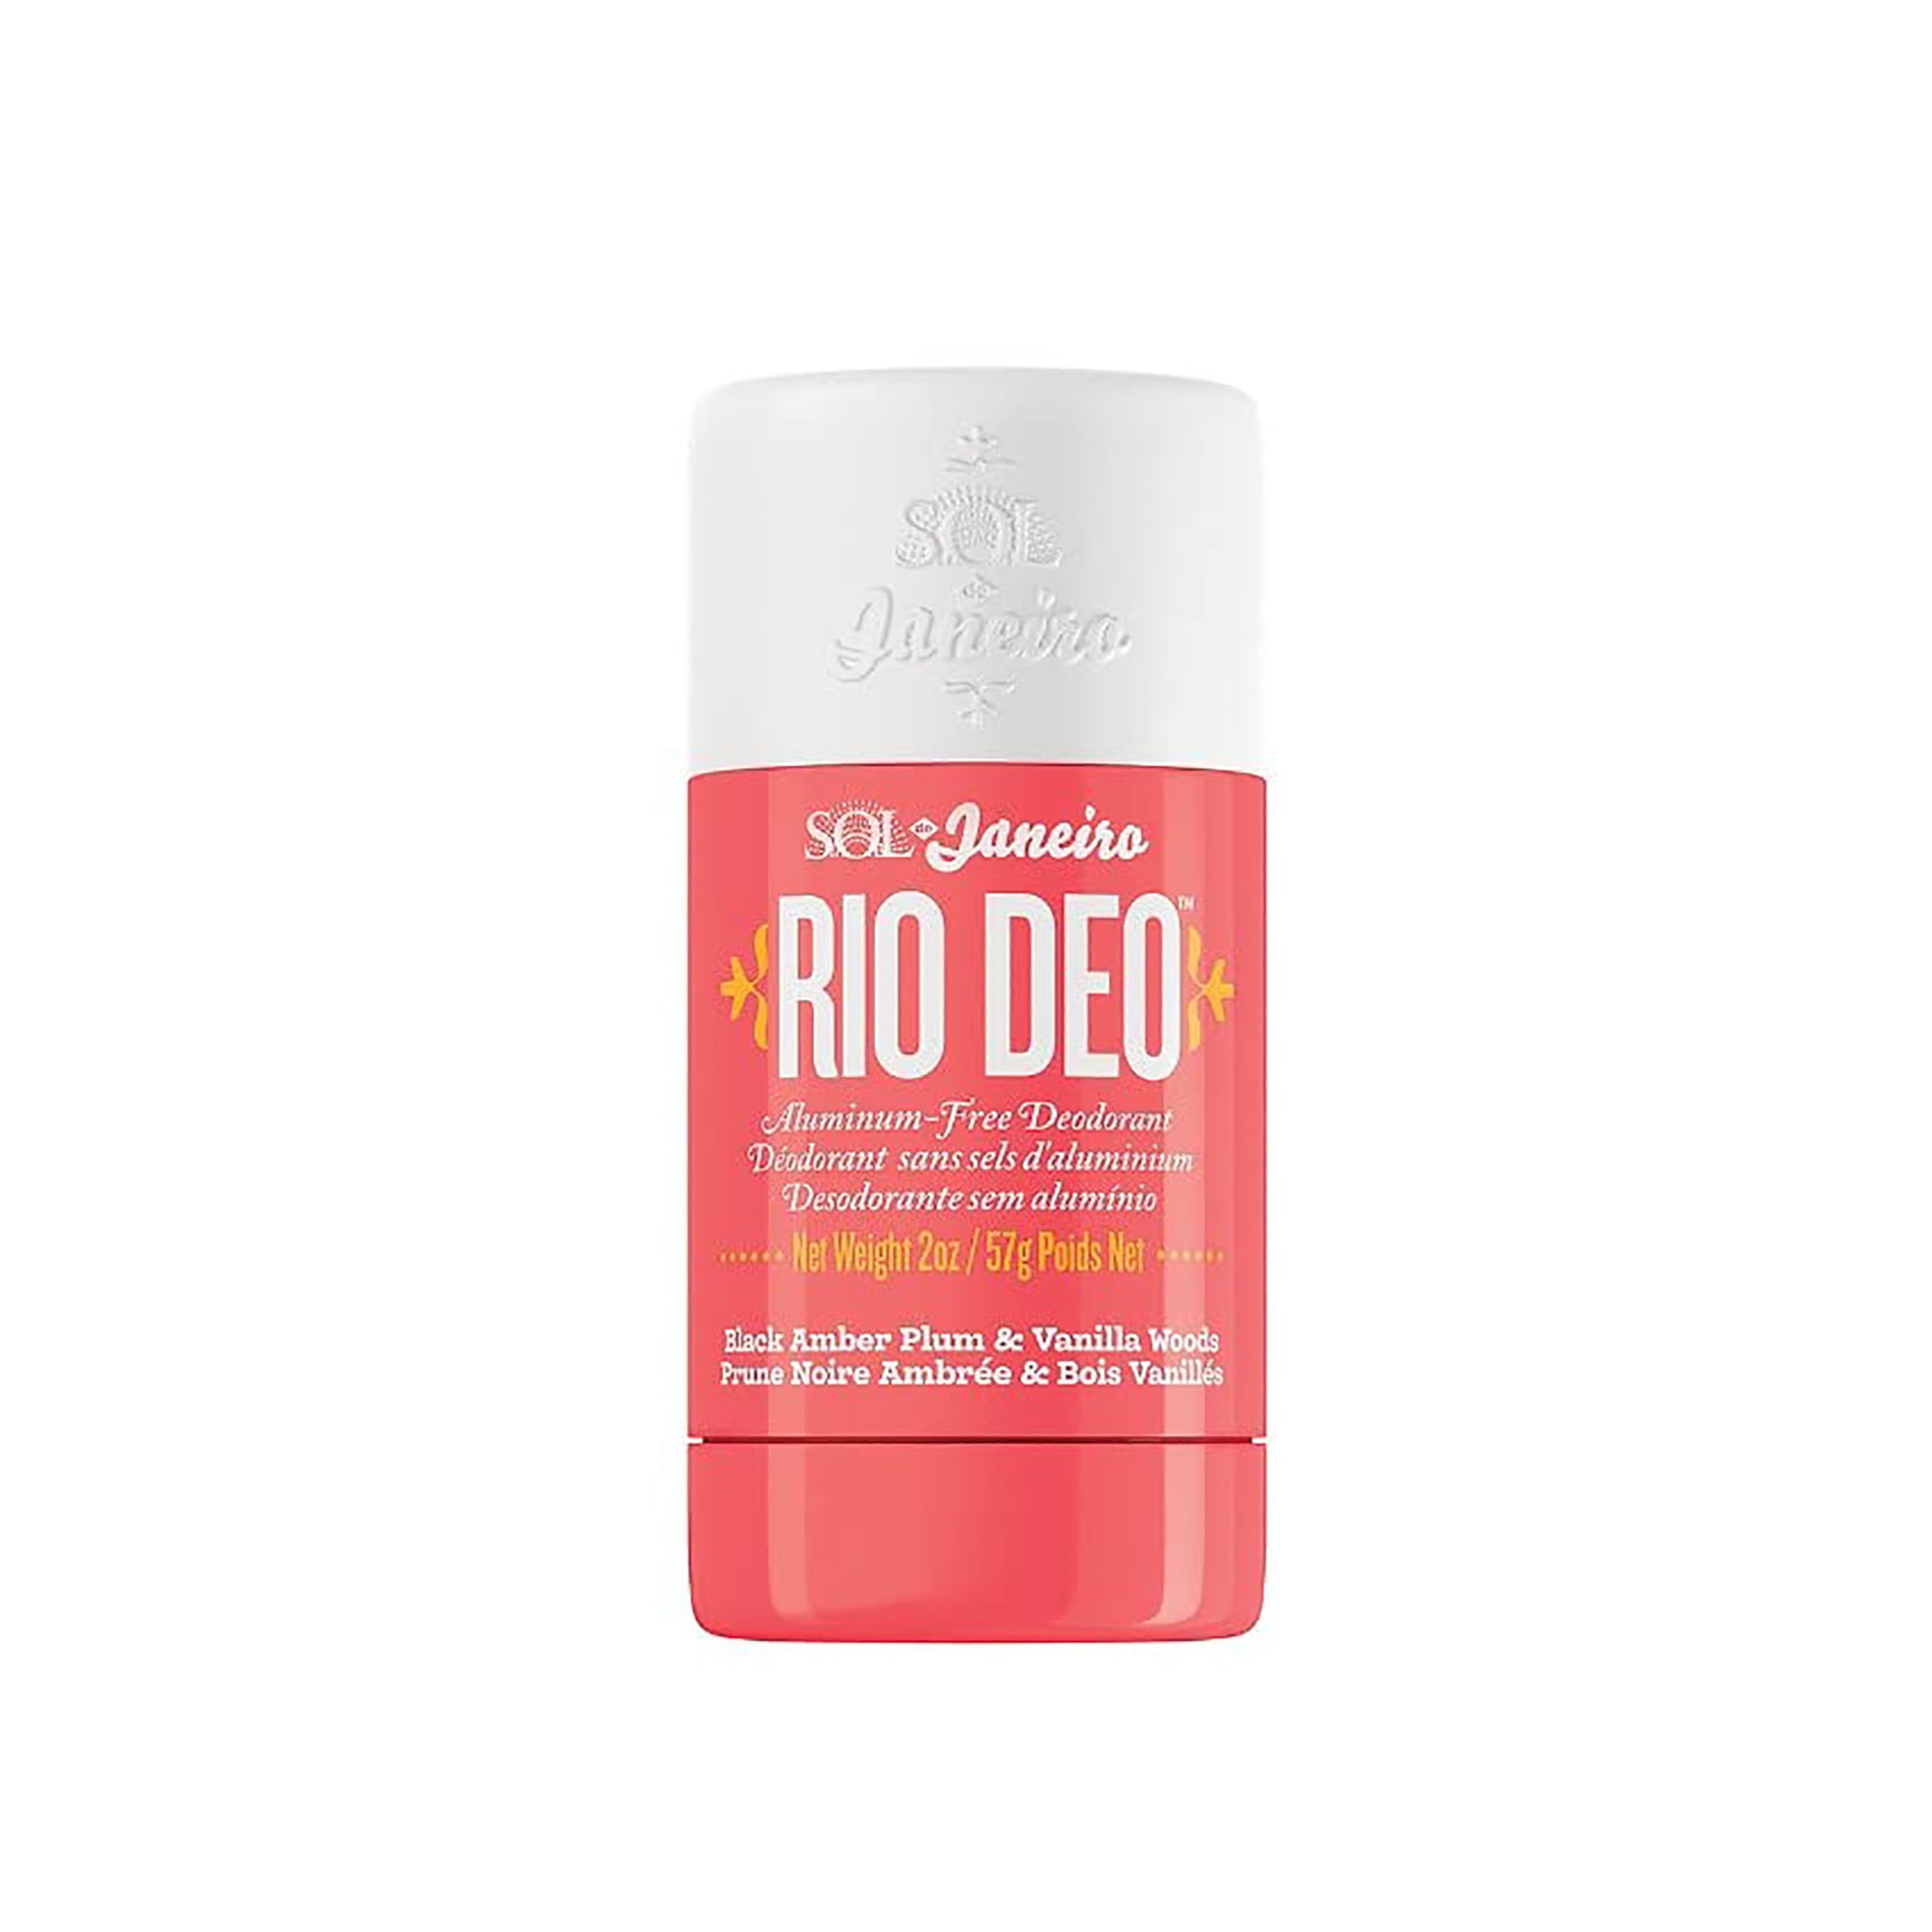 Rio Deo Aluminum-Free Deodorant Cheirosa '40 / 2OZ